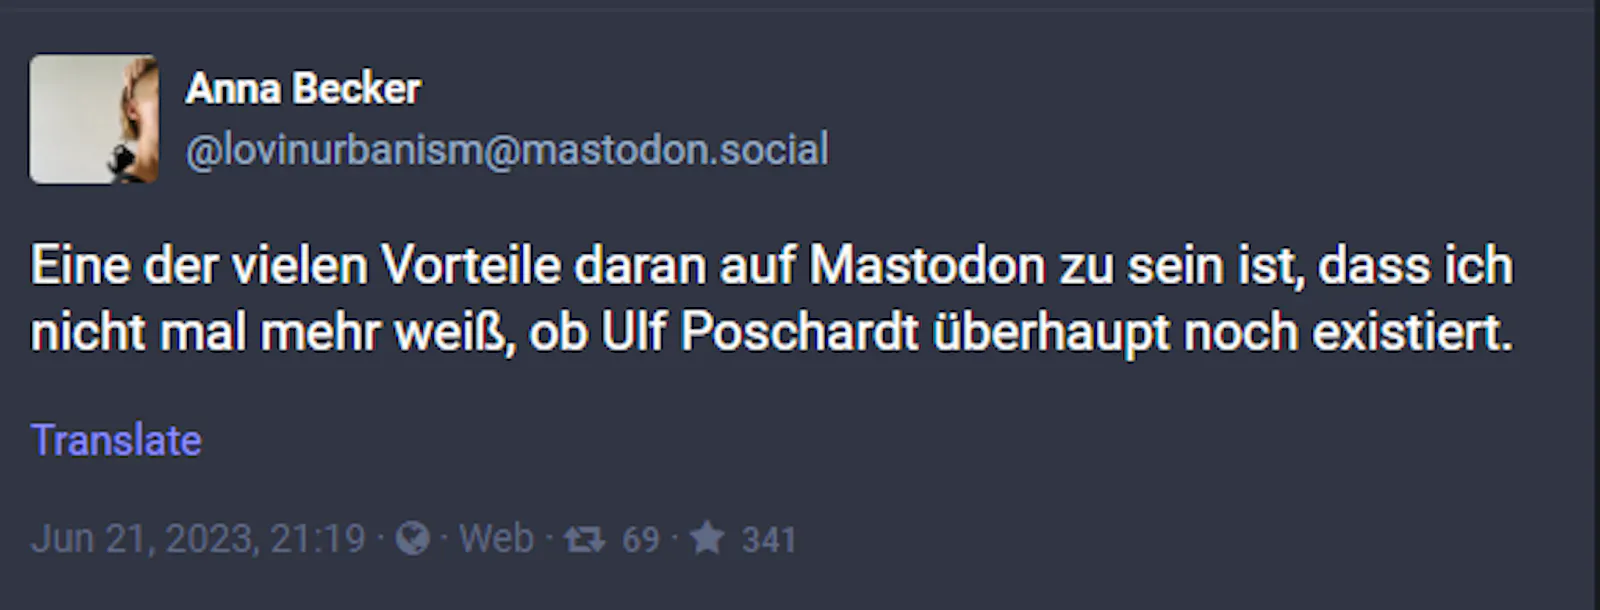 Anna Becker auf Mastodon: "Eine der vielen Vorteile daran auf Mastodon zu sein ist, dass ich nicht mal mehr weiß, ob Ulf Poschardt überhaupt noch existiert"